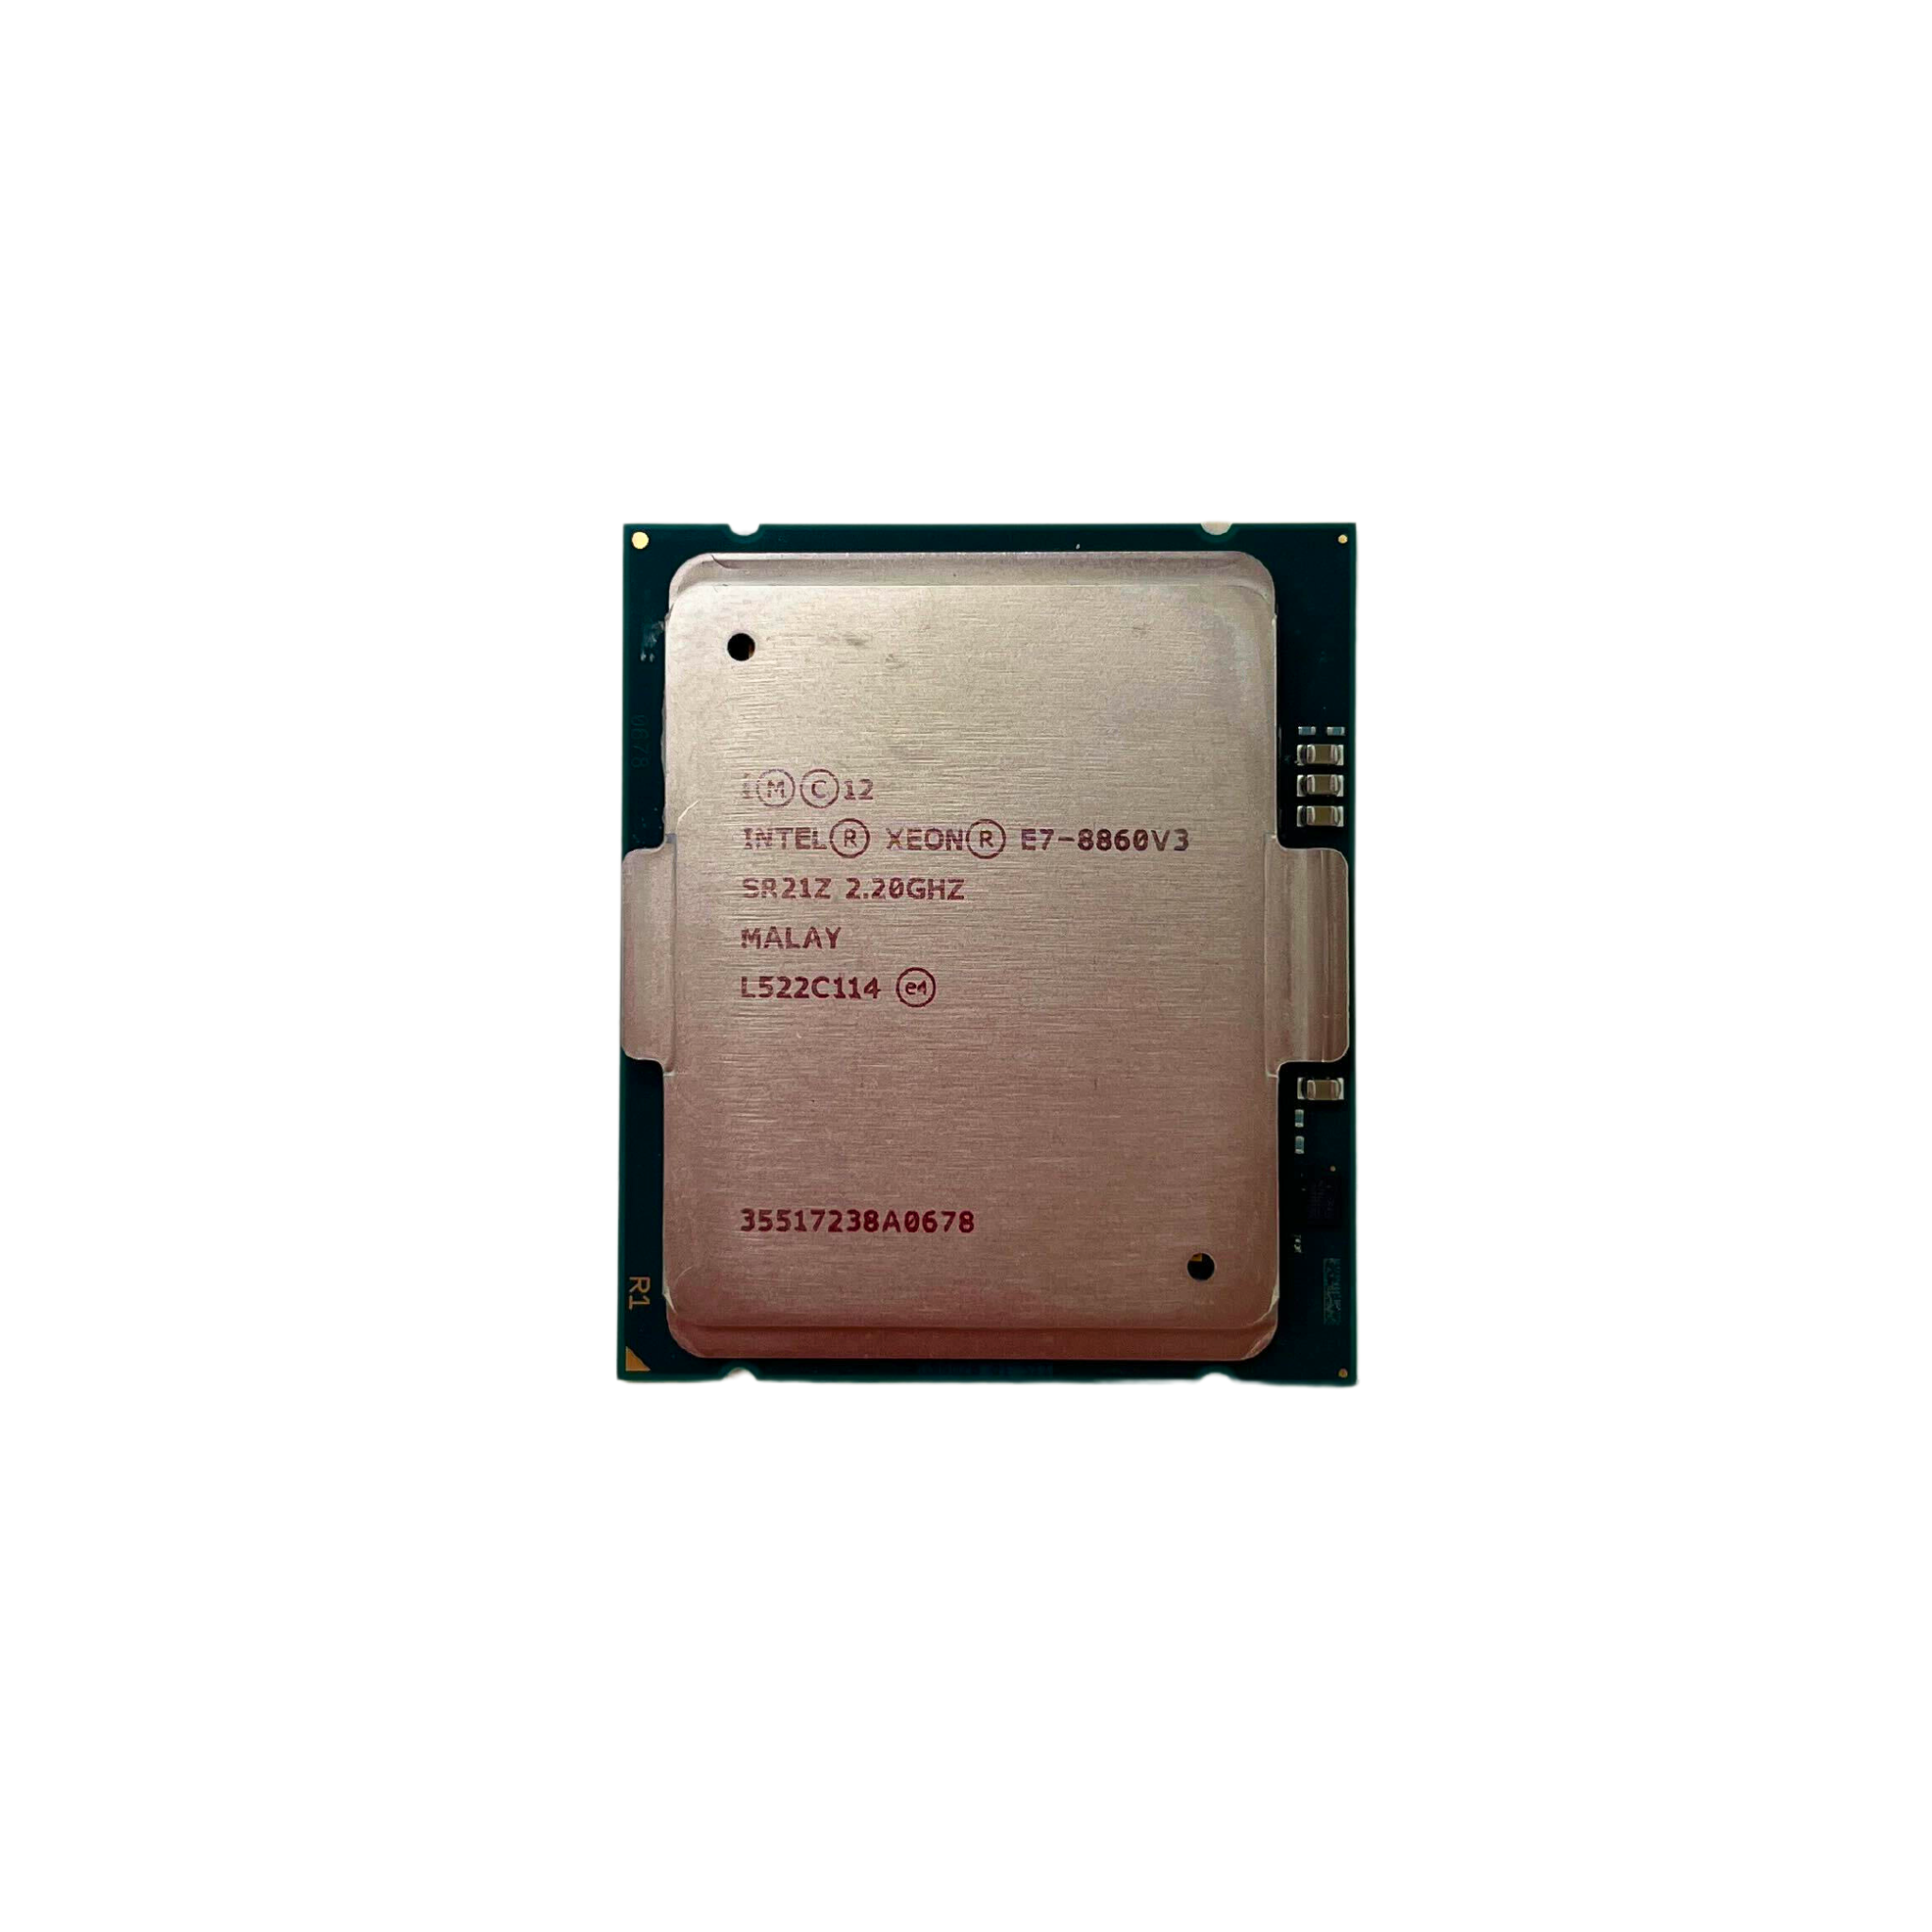 Intel Xeon E7-8860 V3 16-Core 2.2GHz 9.60GT/s QPI 40MB L3 Cache Socket LGA2011 Processor (CM8064502017900)